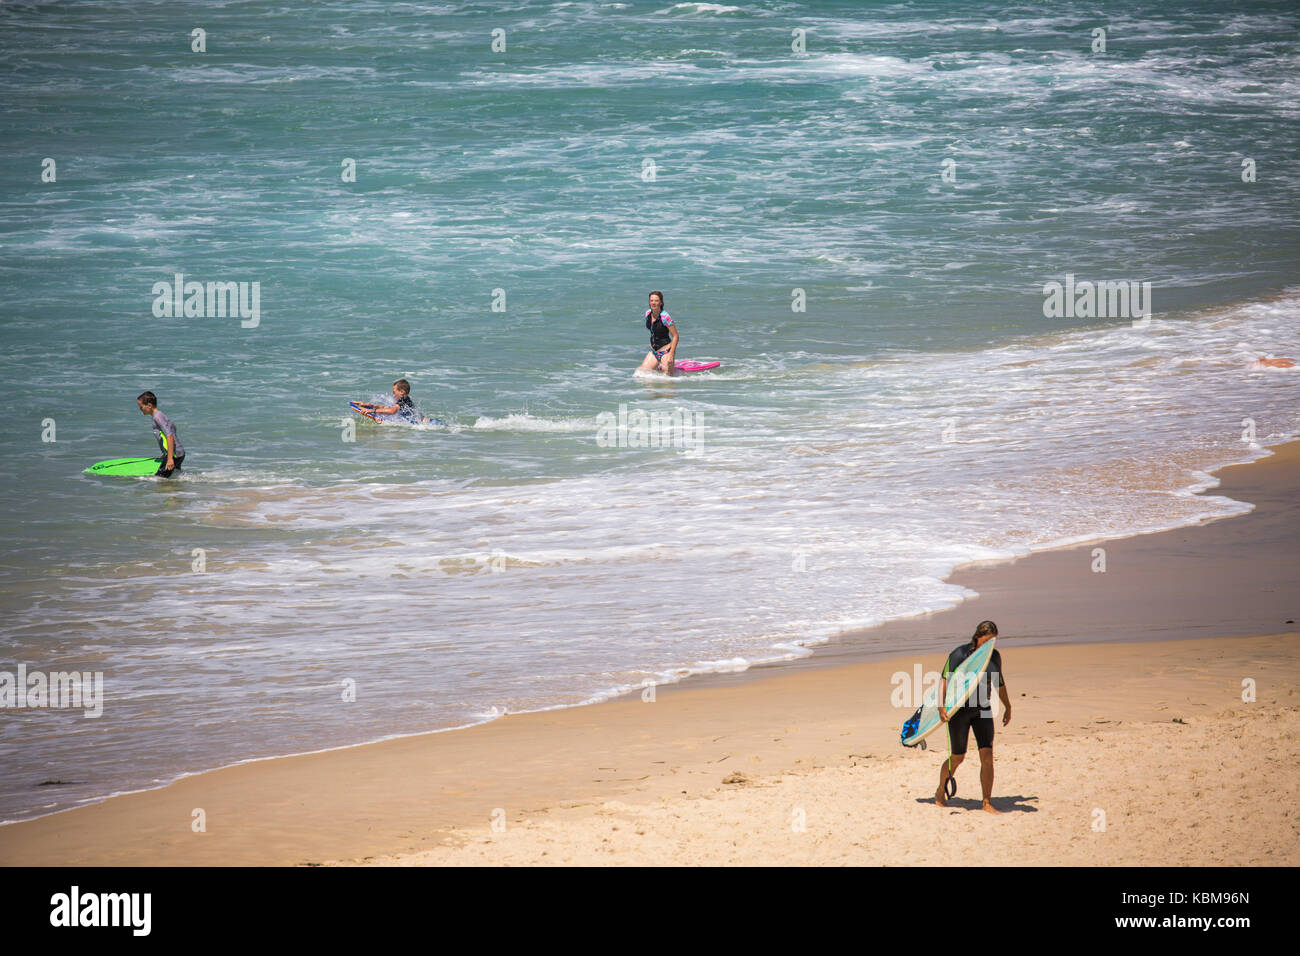 Los surfistas en una milla de playa cerca de Forster en la costa de Nueva Gales del Sur, Australia Foto de stock